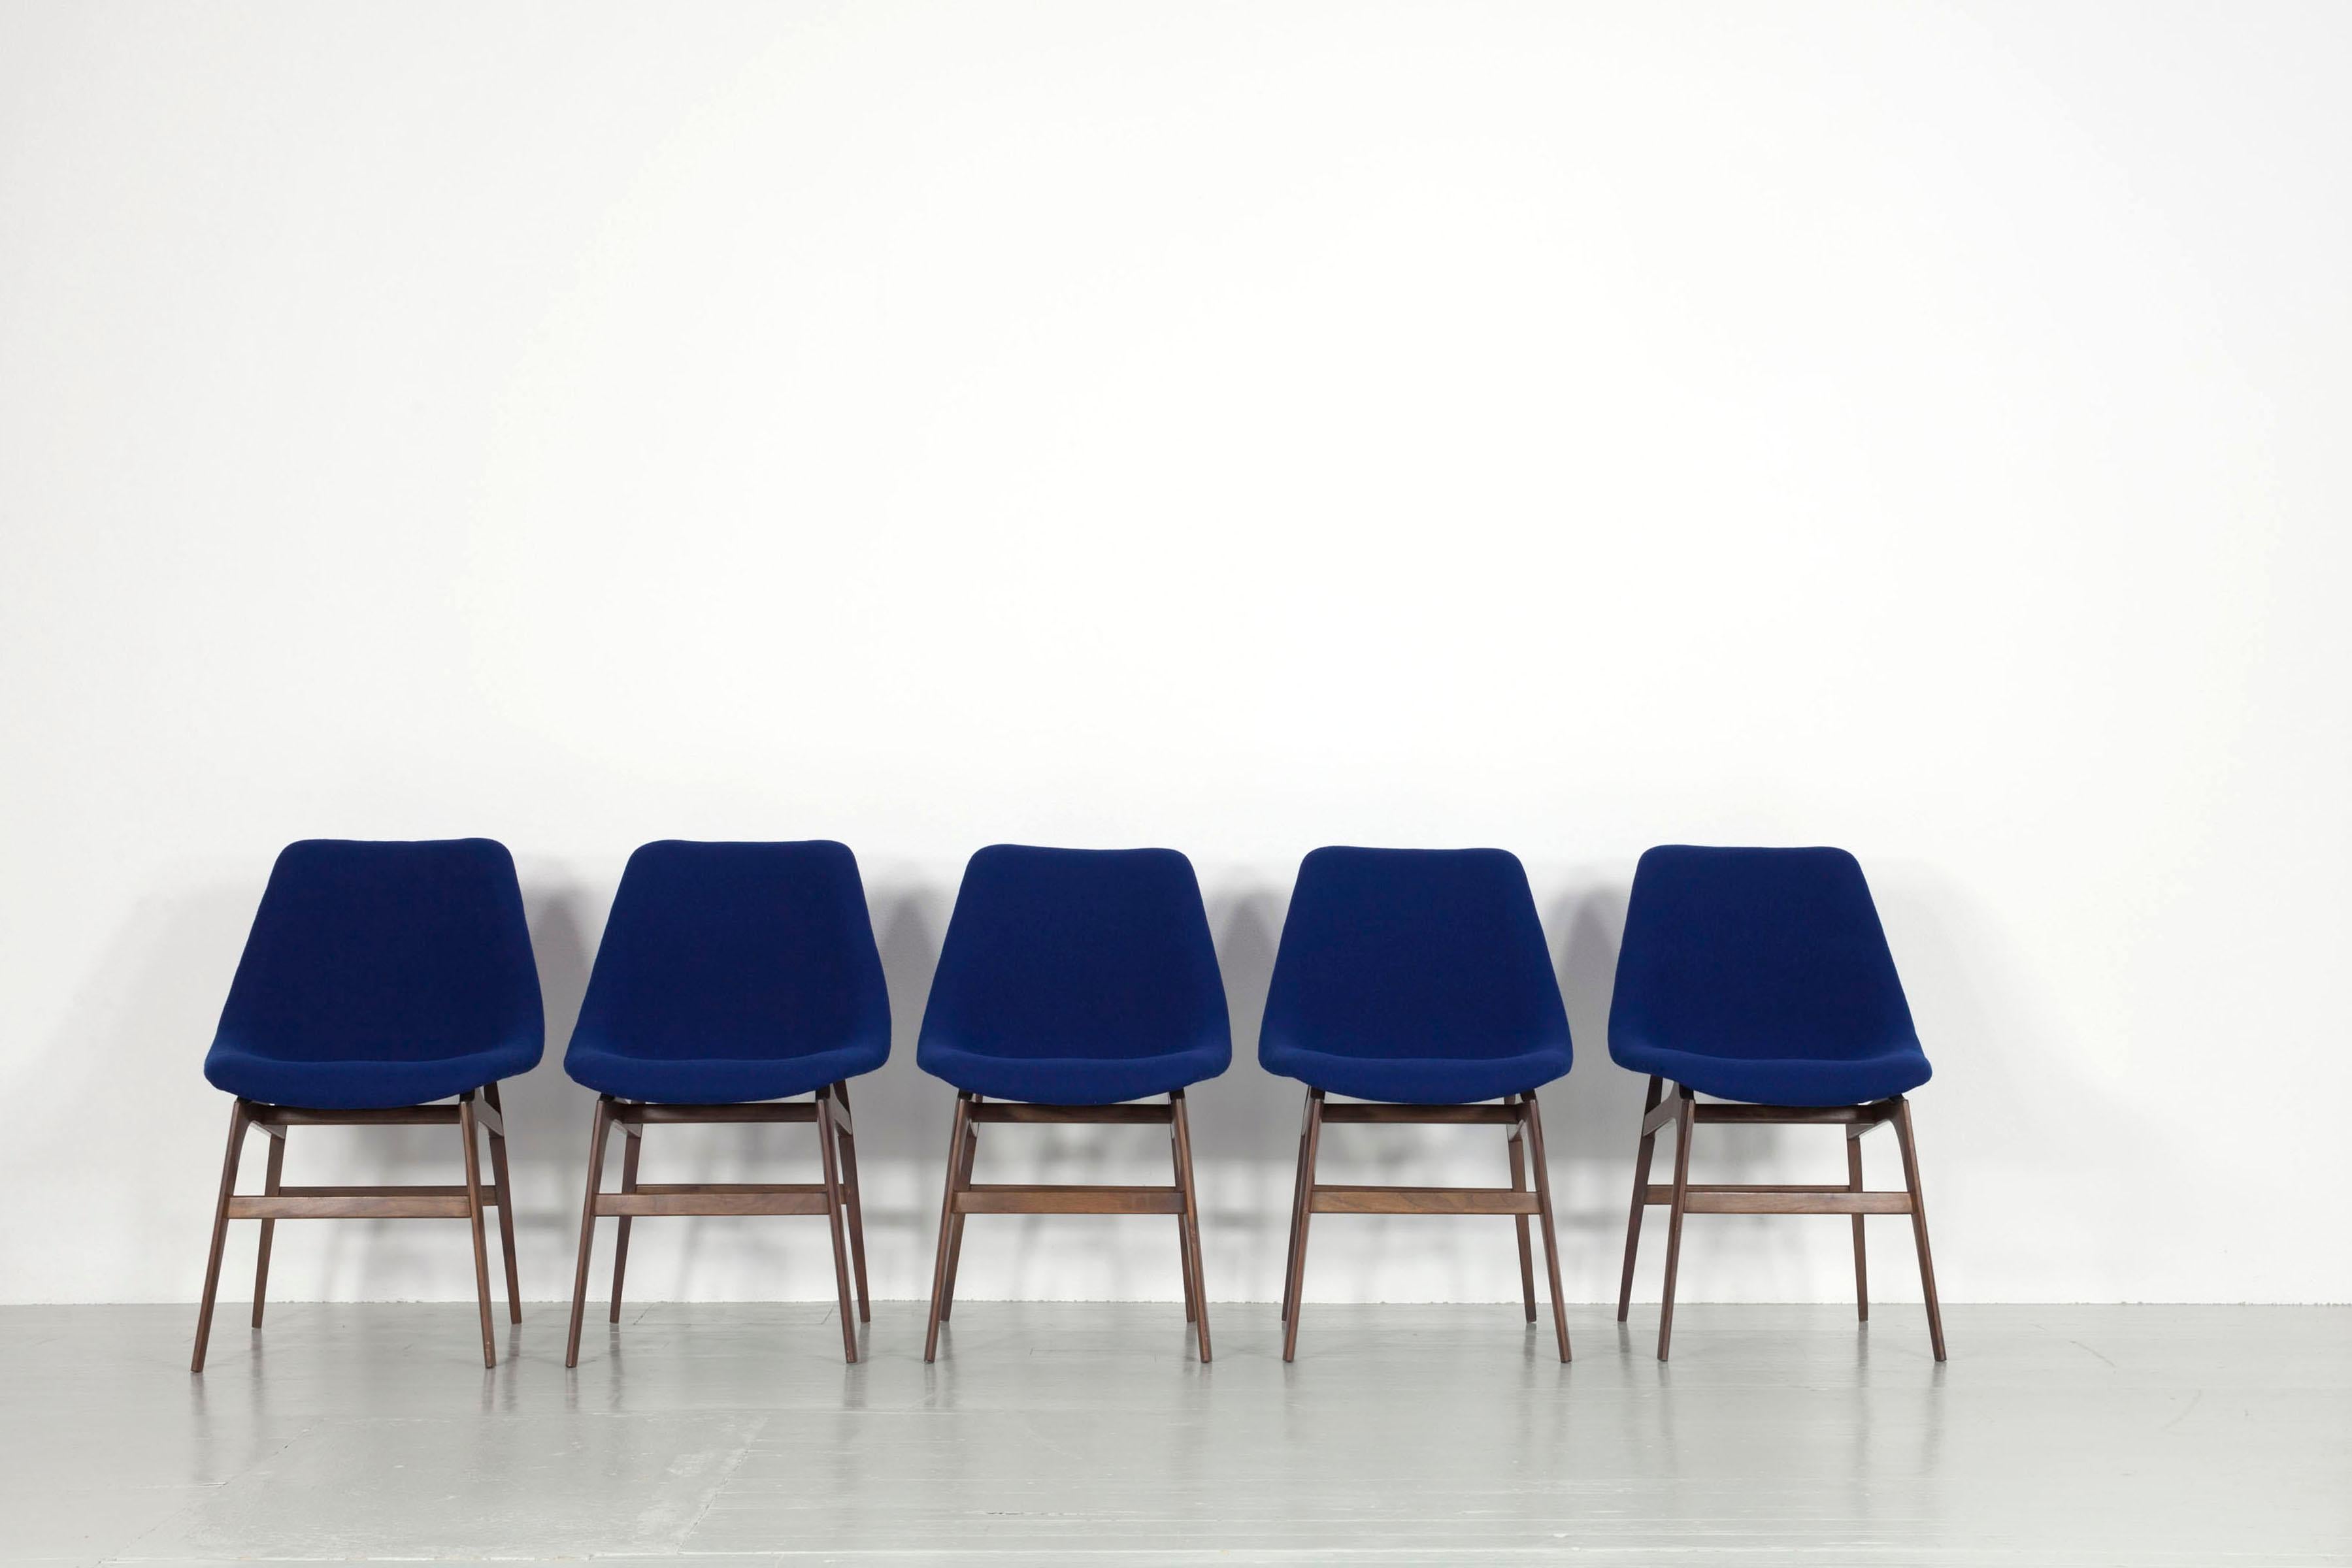 Cet ensemble de six chaises a été fabriqué en Italie dans les années 1960 et commercialisé par la société Busnelli di Meda. Les cadres des chaises en teck, très robustes, présentent des signes d'usure. Le siège est constitué d'une coque en fibre de